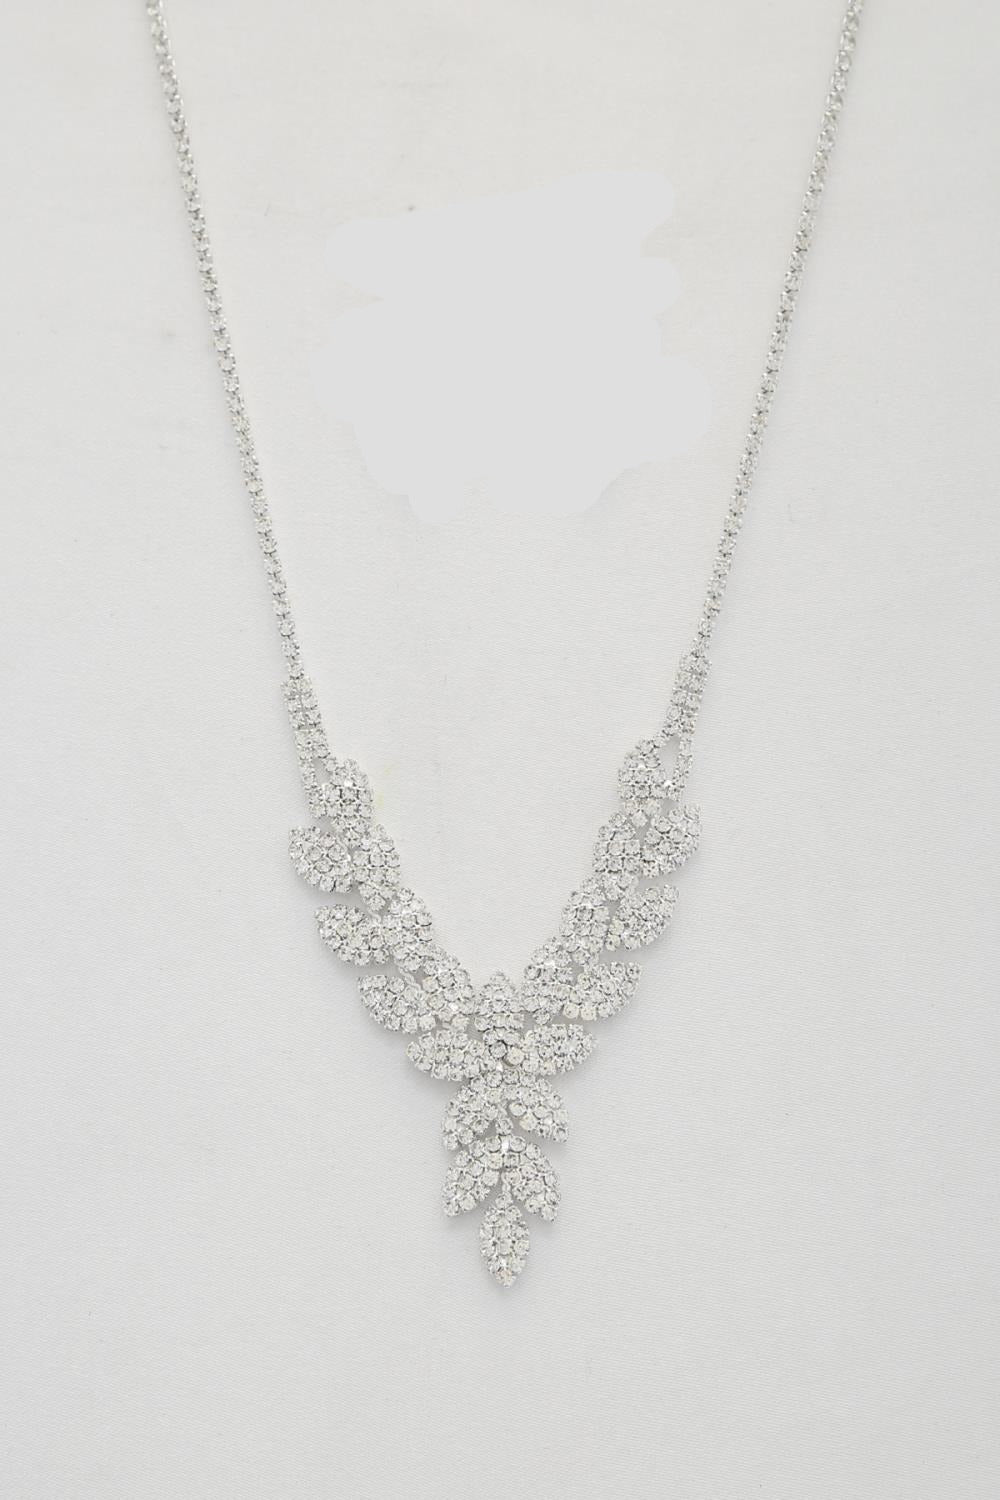 Leaf Pattern Crystal Necklace - Tigbul's Fashion